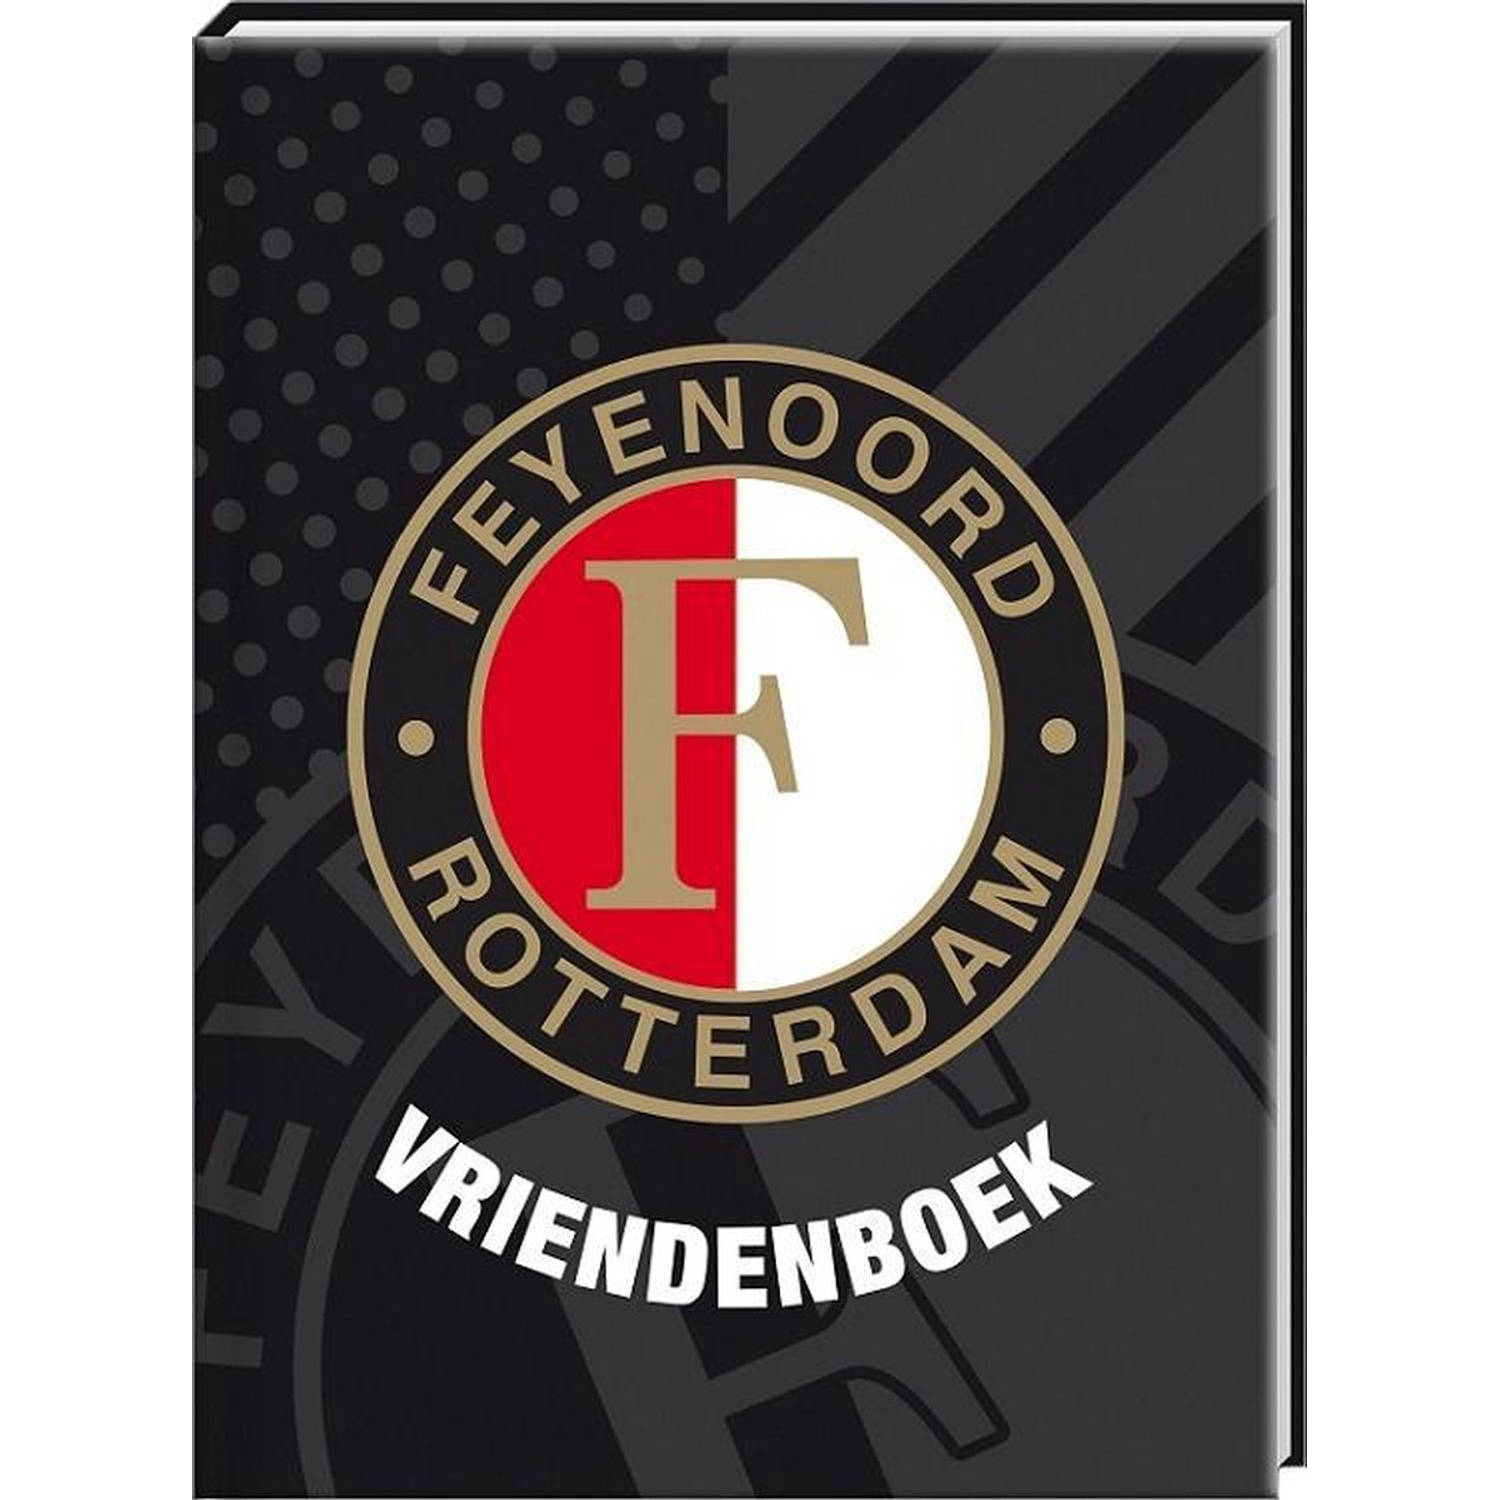 Concessie Catena Ontmoedigen Feyenoord vriendenboekje vriendenboek | Blokker